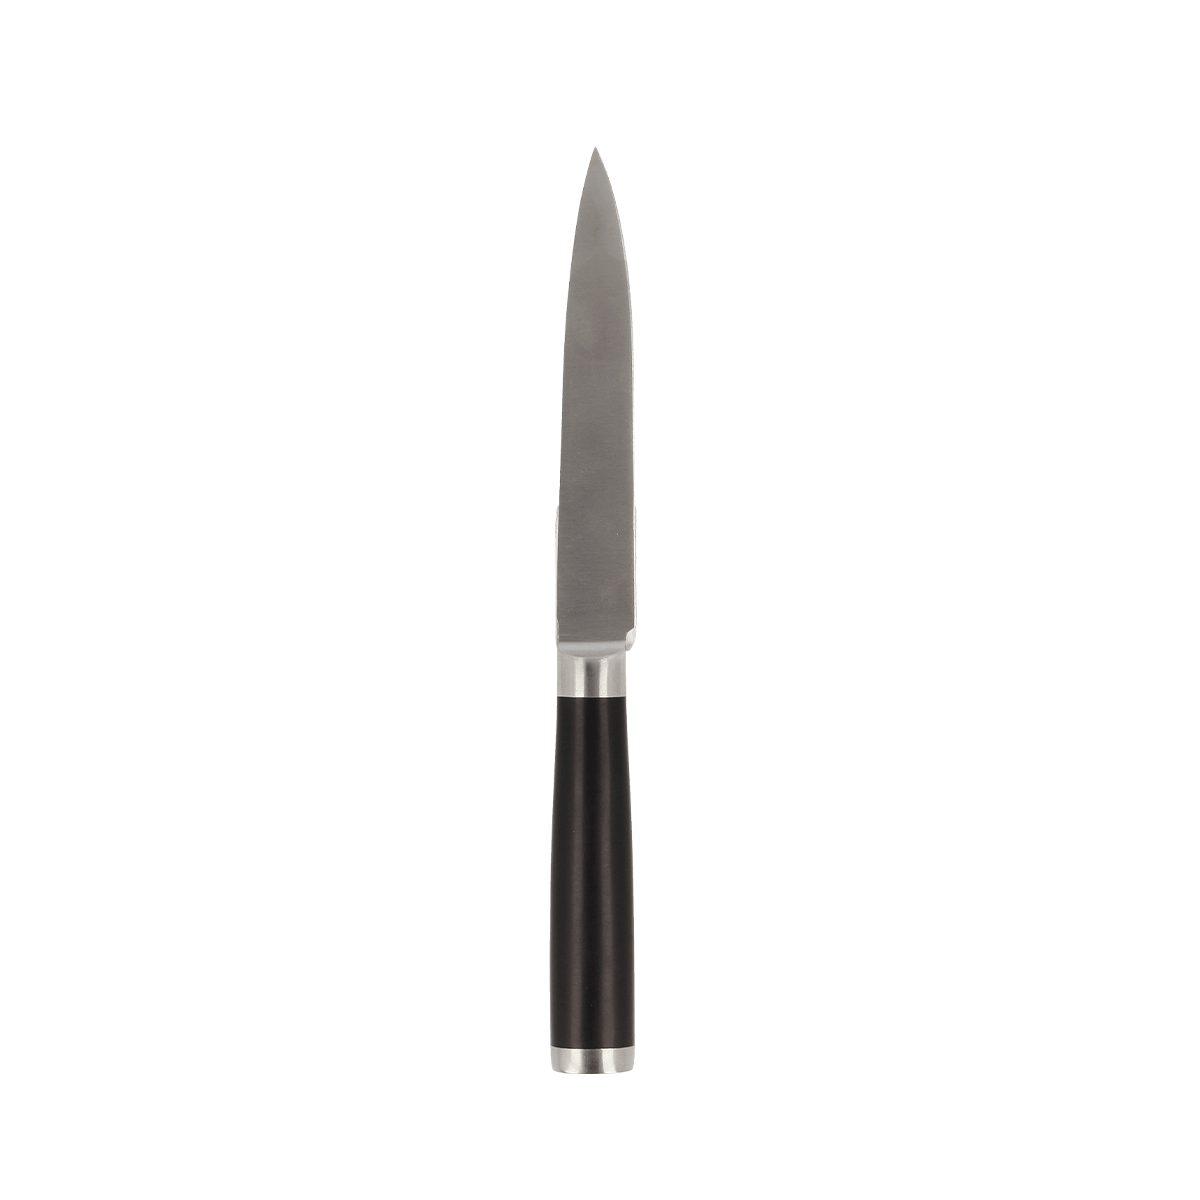 EUROHOME Universalmesser Edelstahl Schneidemesser scharf mit rutschfestem Kunststoffgriff, (Messer 23,5 cm lang), Universalmesser Küche - Gemüsemesser scharf